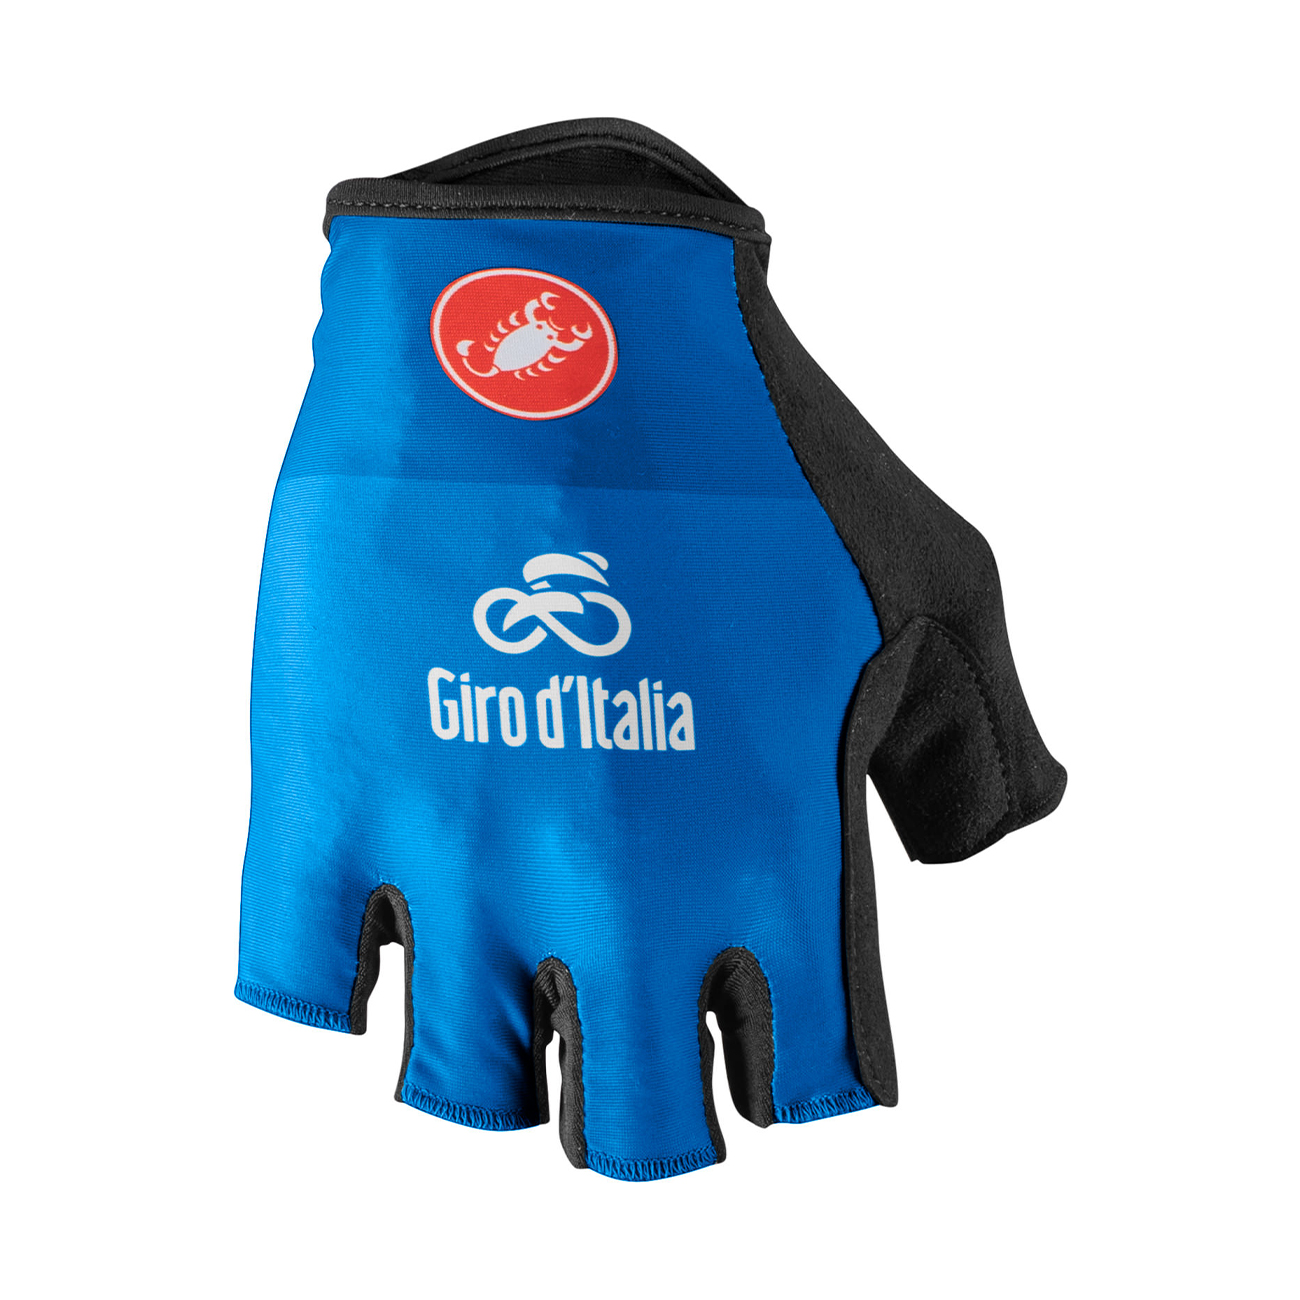 CASTELLI Kolarskie Rękawiczki Z Krótkimi Palcami - GIRO D'ITALIA - Niebieski